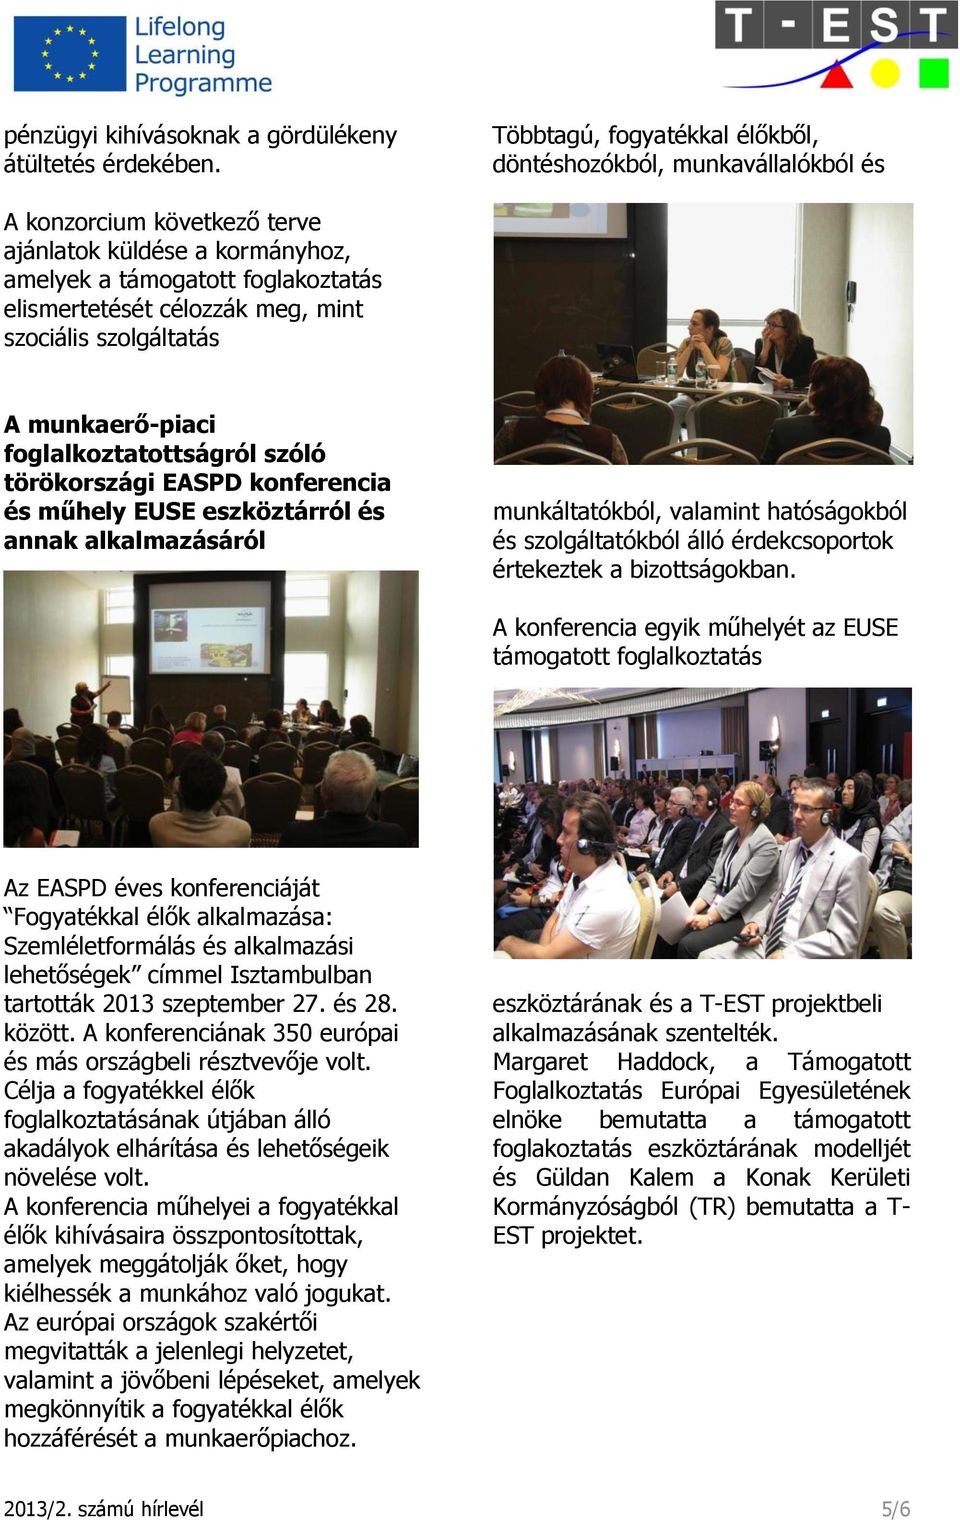 szociális szolgáltatás A munkaerő-piaci foglalkoztatottságról szóló törökországi EASPD konferencia és műhely EUSE eszköztárról és annak alkalmazásáról munkáltatókból, valamint hatóságokból és